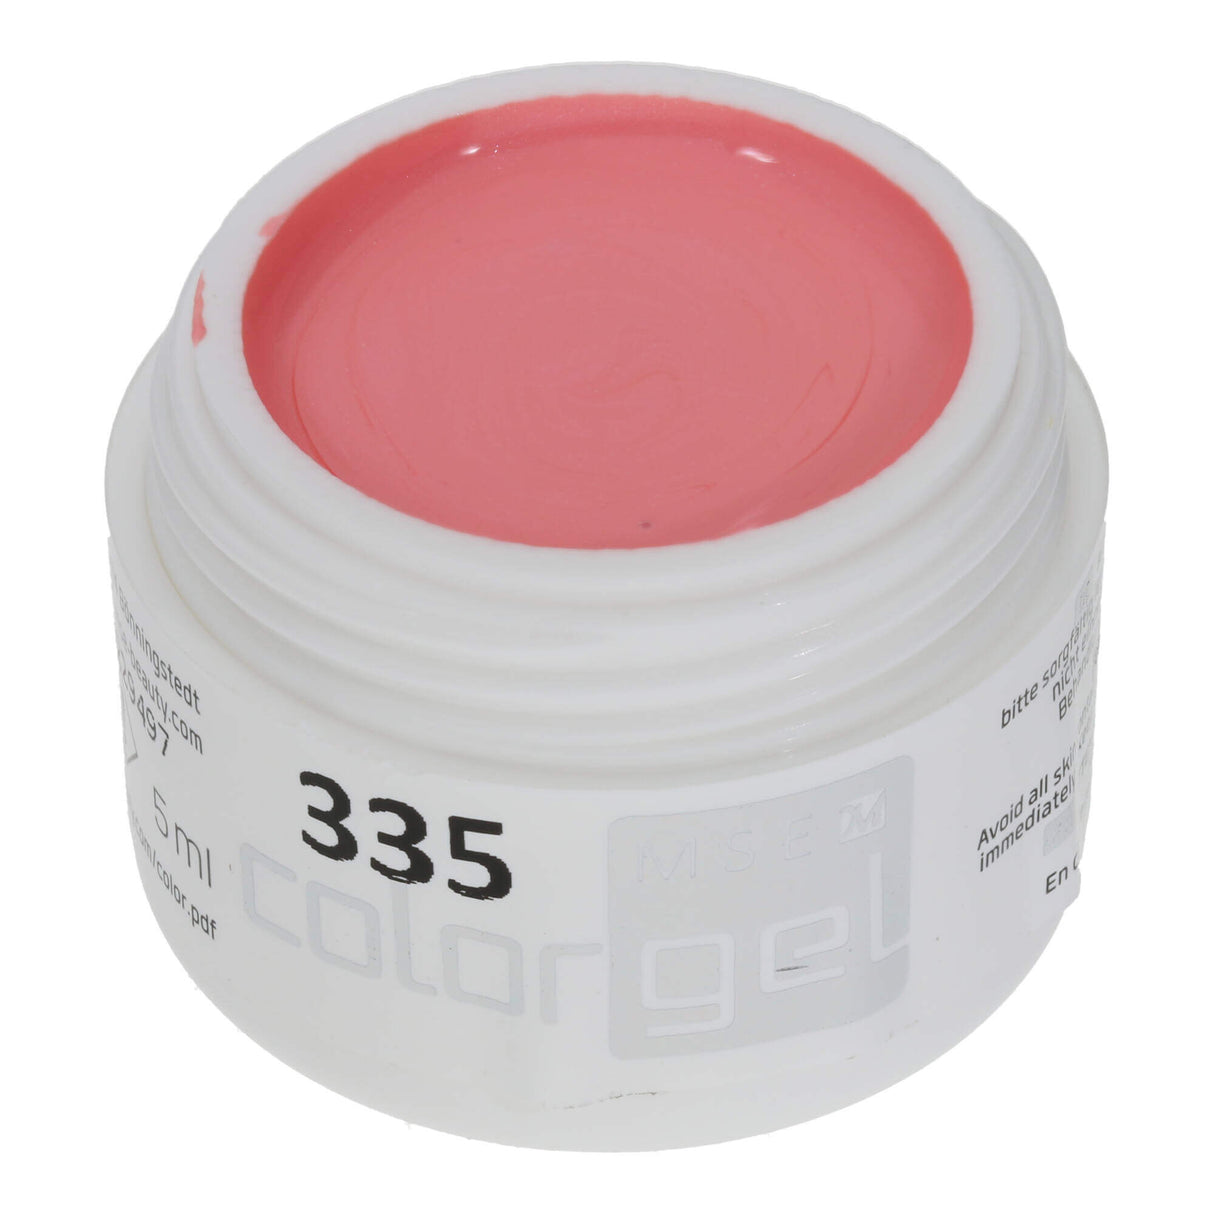 # 335 Premium EFFECT Color Gel 5ml Màu hồng nhạt với hiệu ứng ngọc trai rất tinh tế